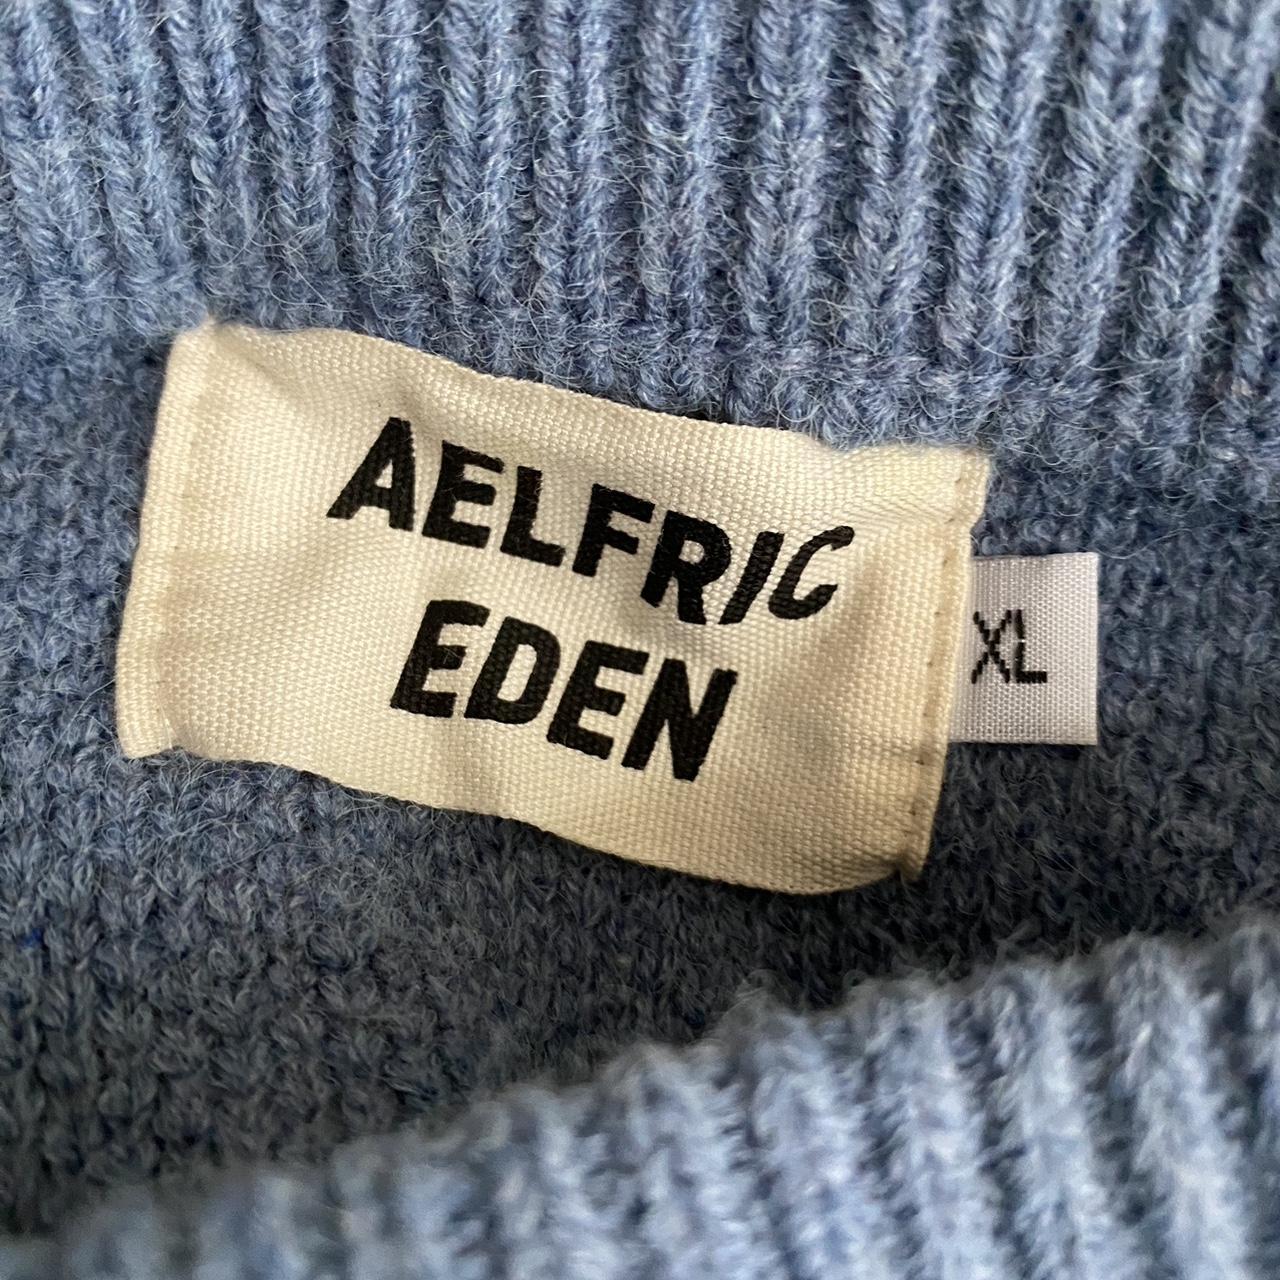 Aelfric Eden wow goose knit jumper. Size XL, never... - Depop